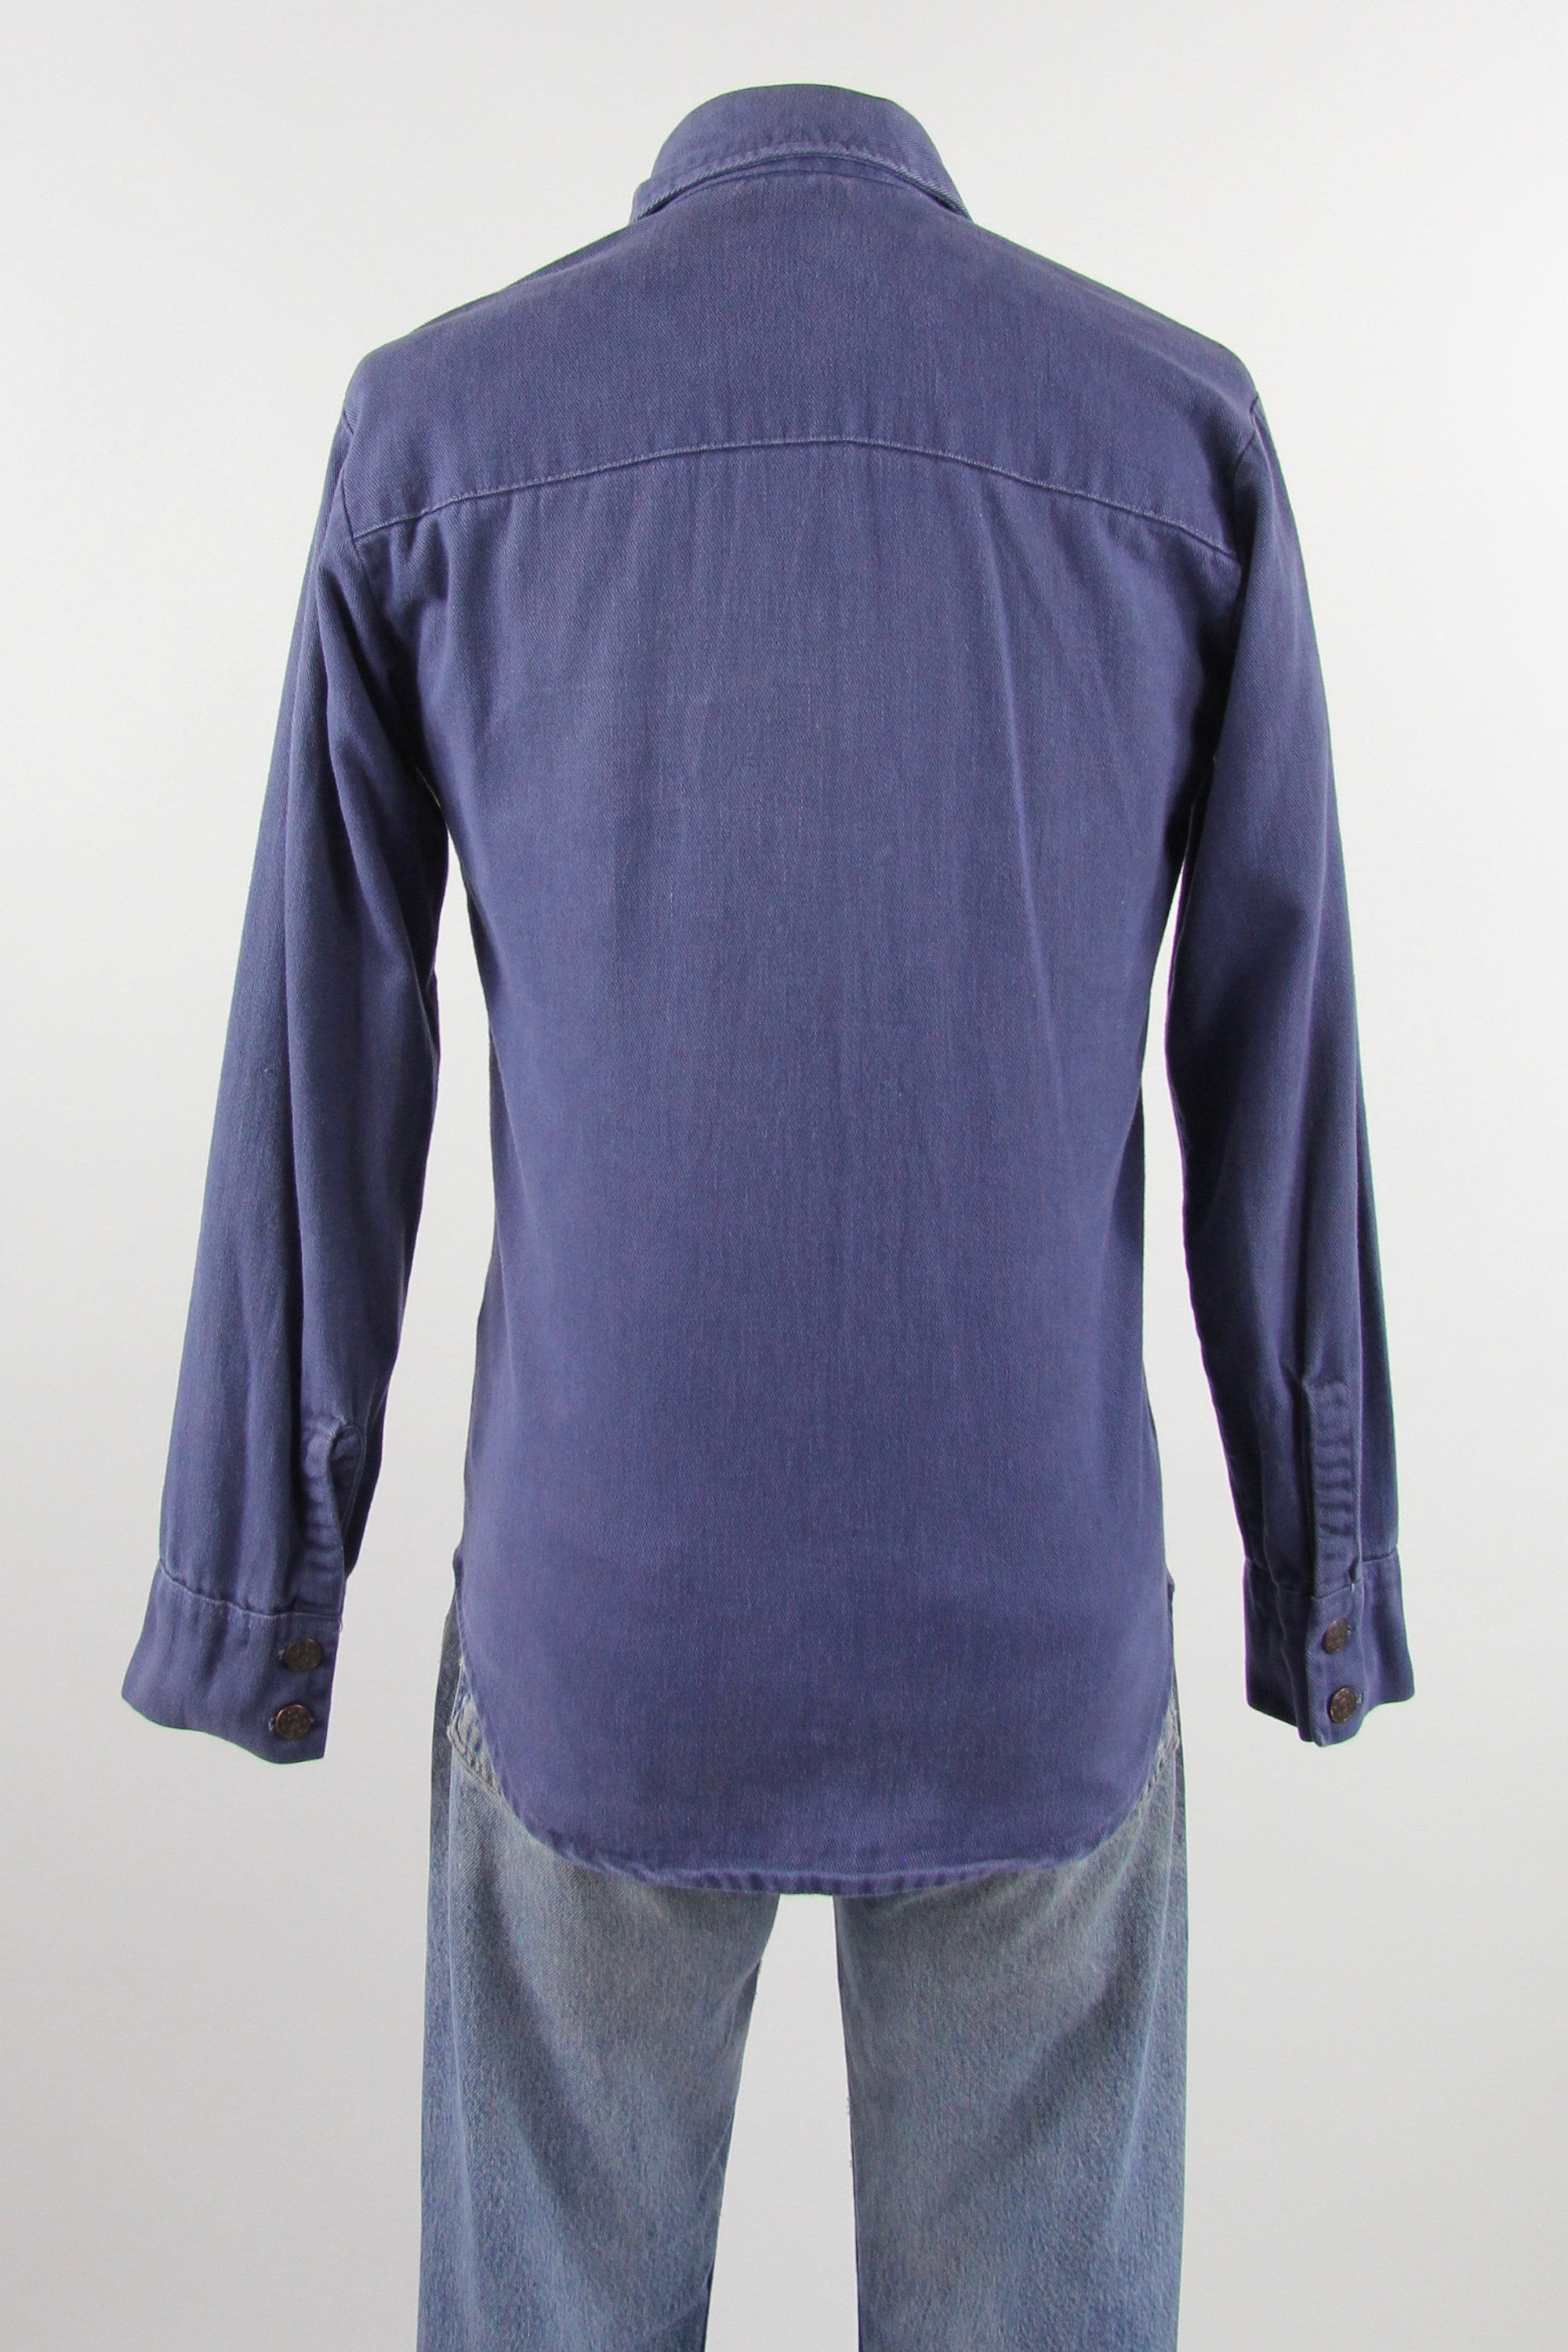 60's Work Shirt Button Down Men's Vintage Cotton Denim Shirt Size Medium